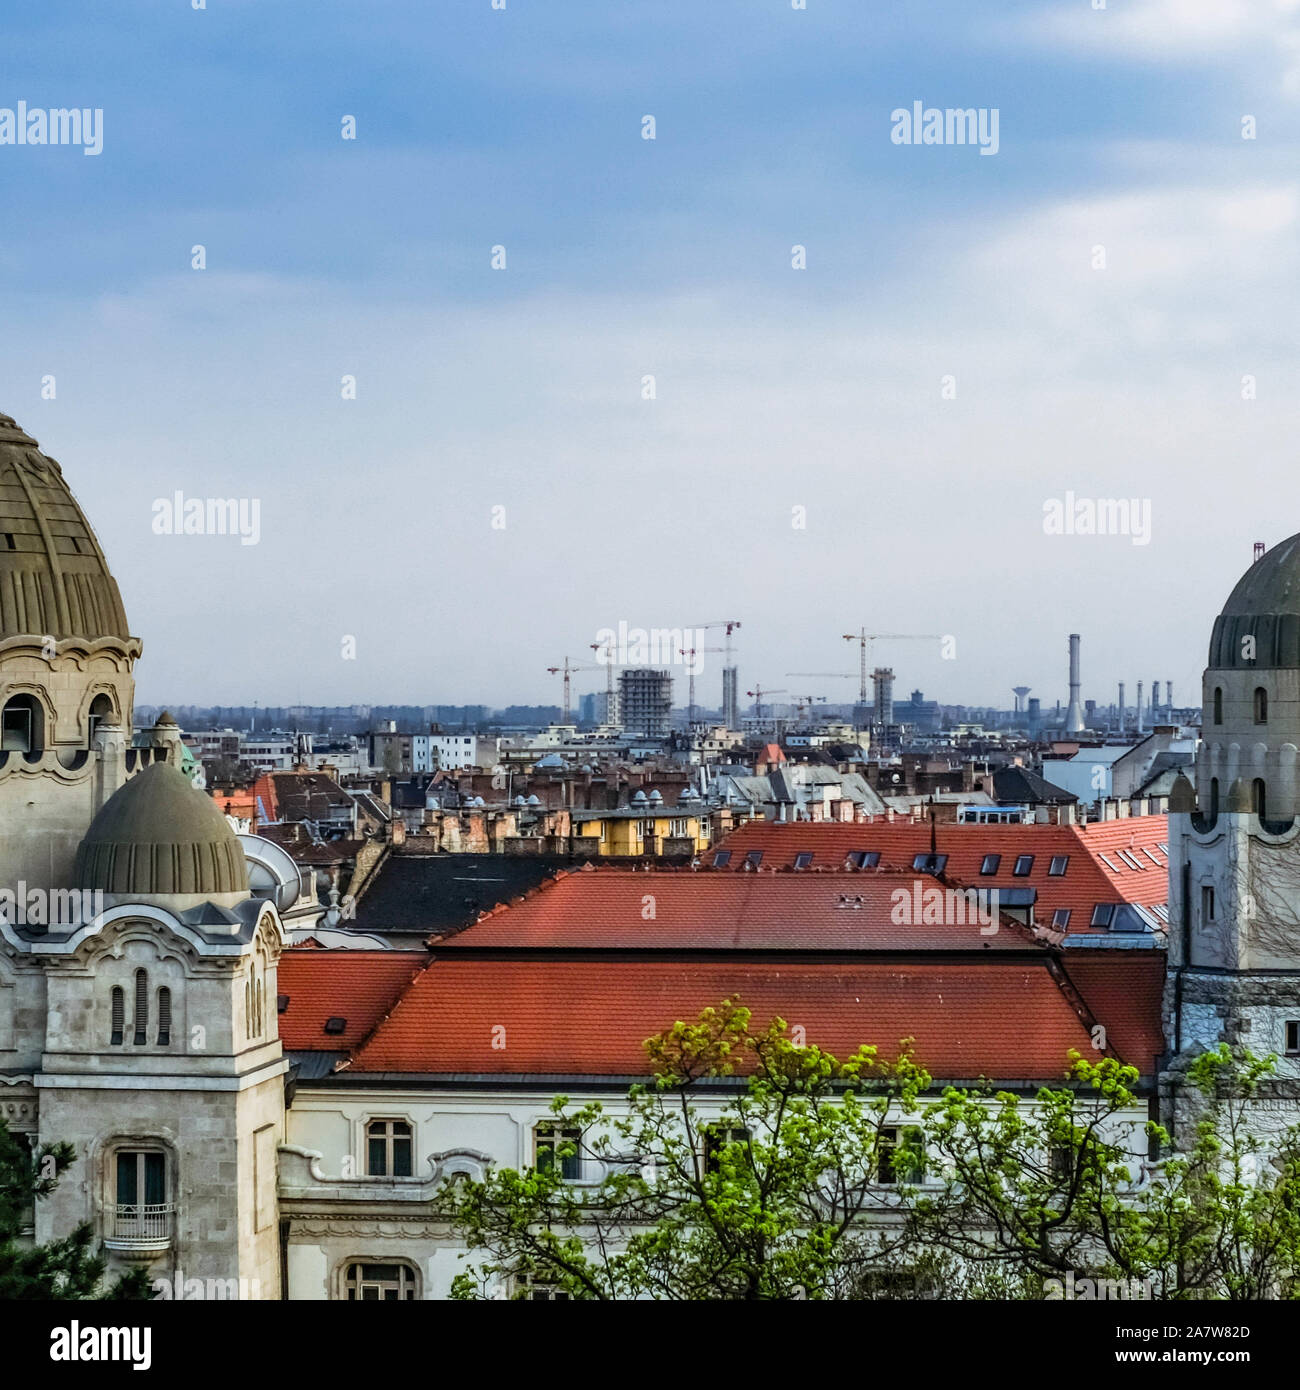 Dach und zwei Türme von Gellert Thermalbad Komplex mit Budapest Stadtbild auf einem Hintergrund. Stockfoto